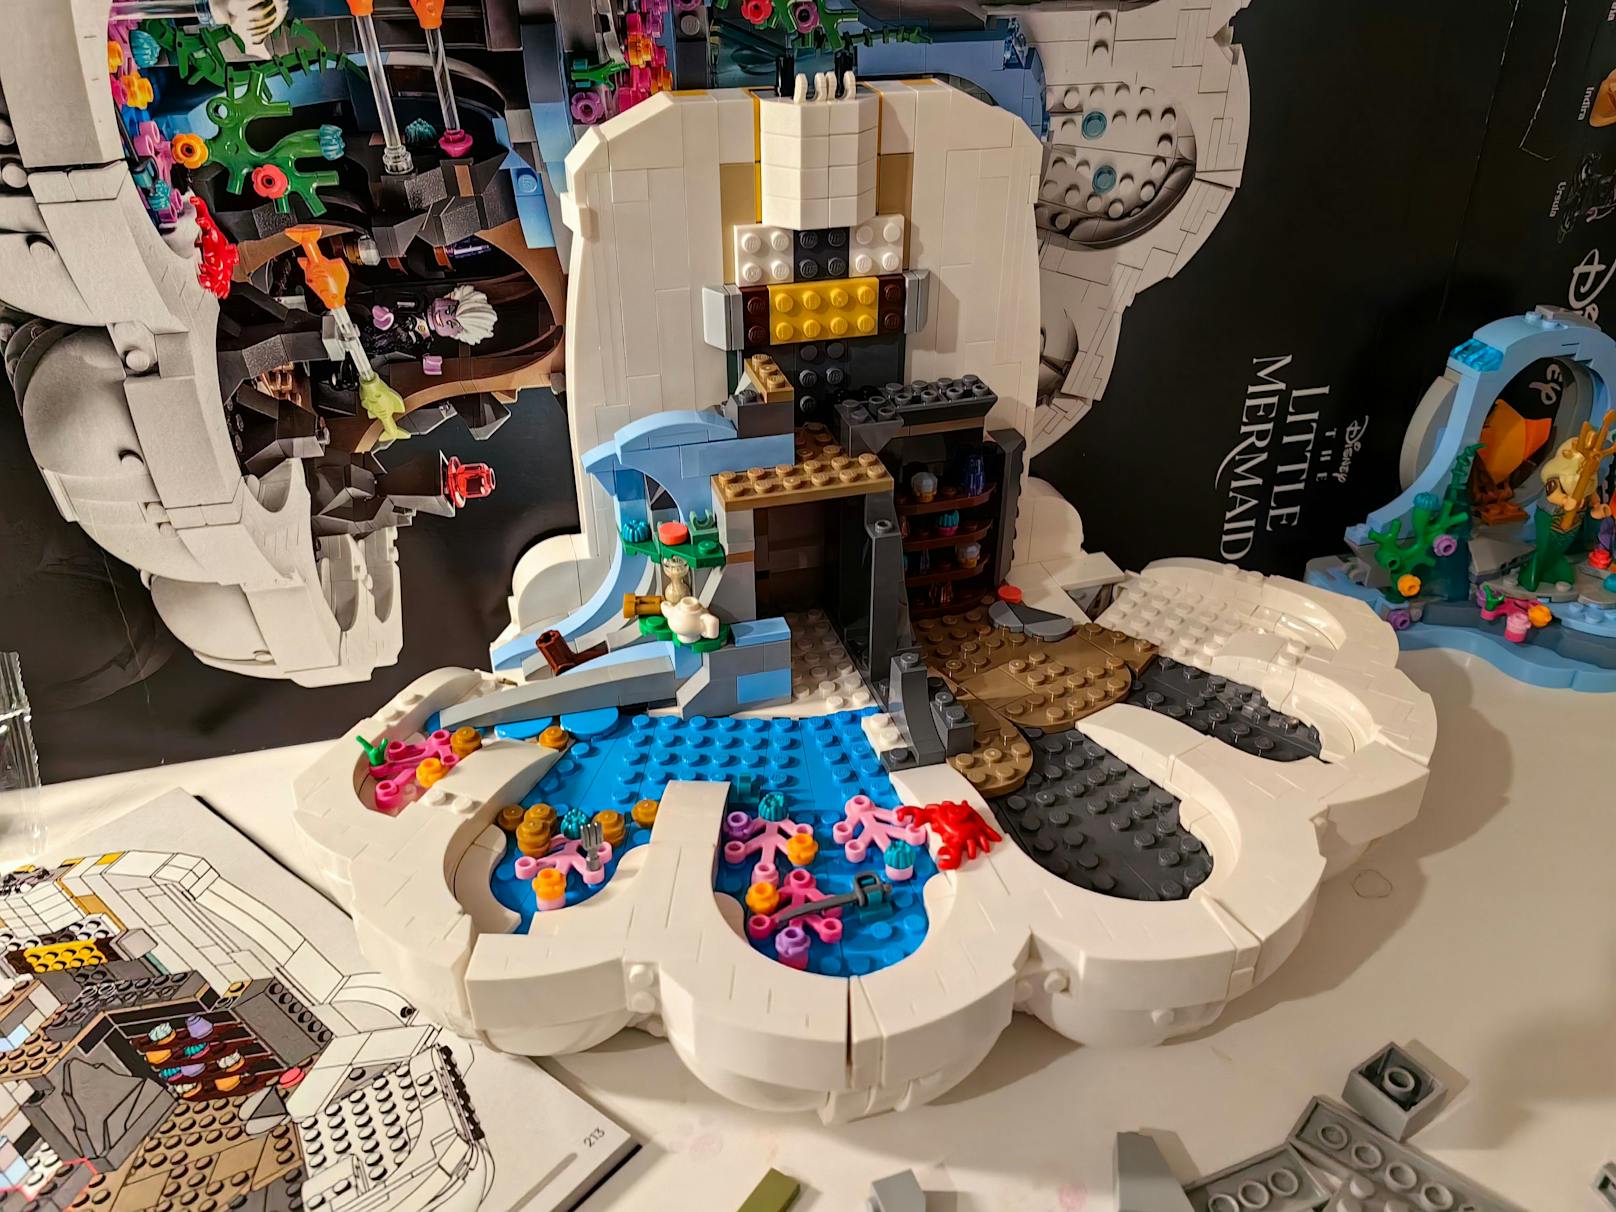 Selbst erfahrene LEGO-Bauer wird es hier nicht langweilig werden. Das eigentliche Highlight ist jedoch die Komposition dieses Sets!